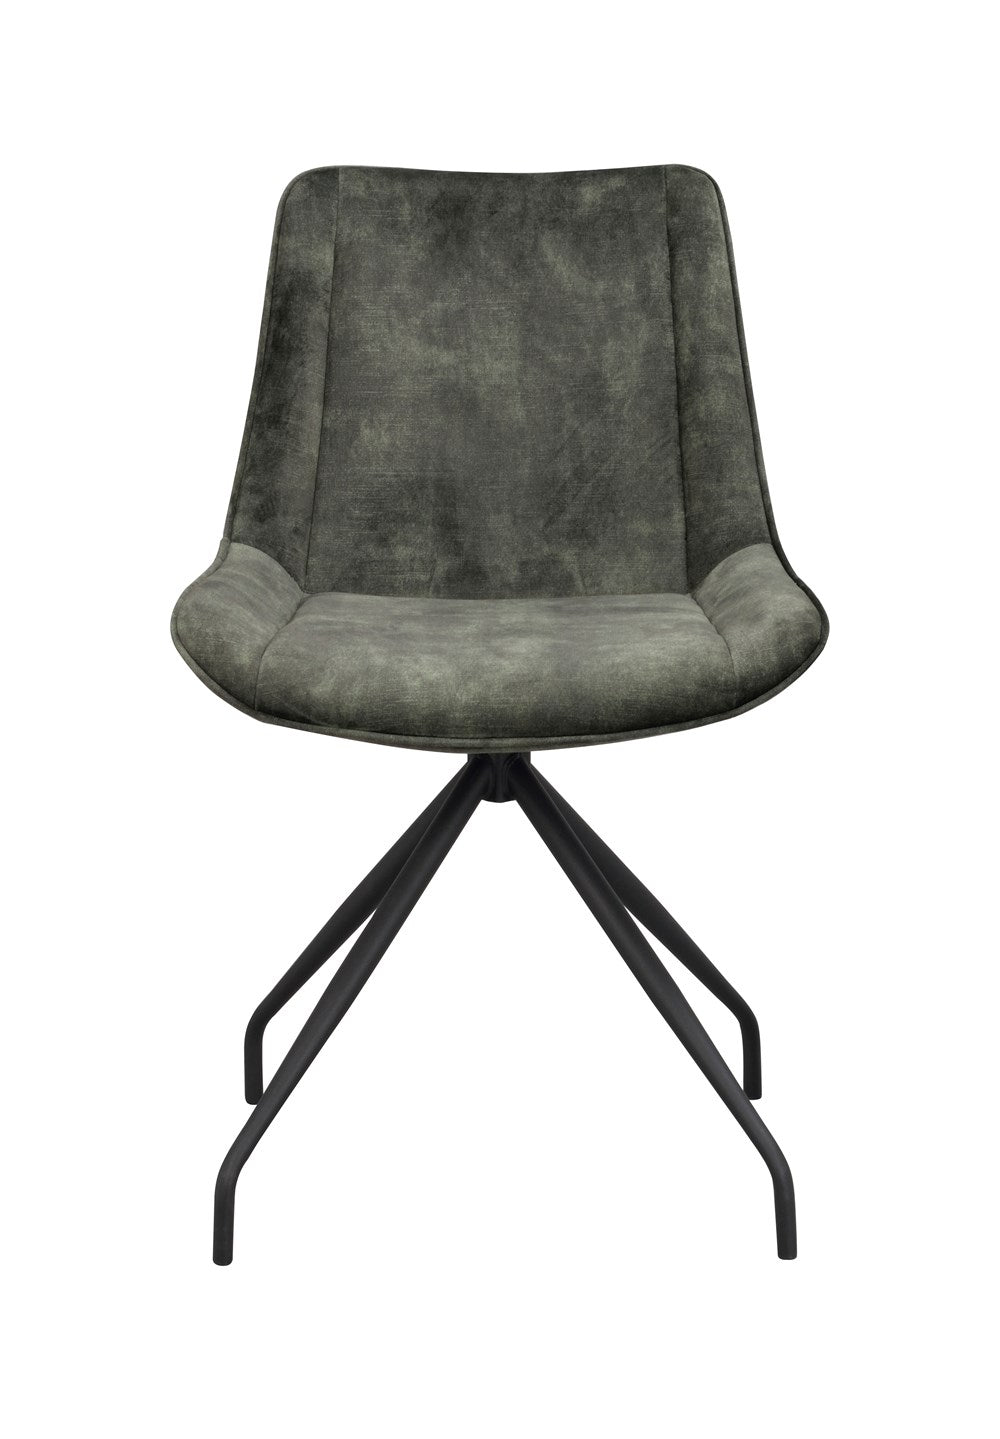 120081_a-rossport-chair-green-velvet_black